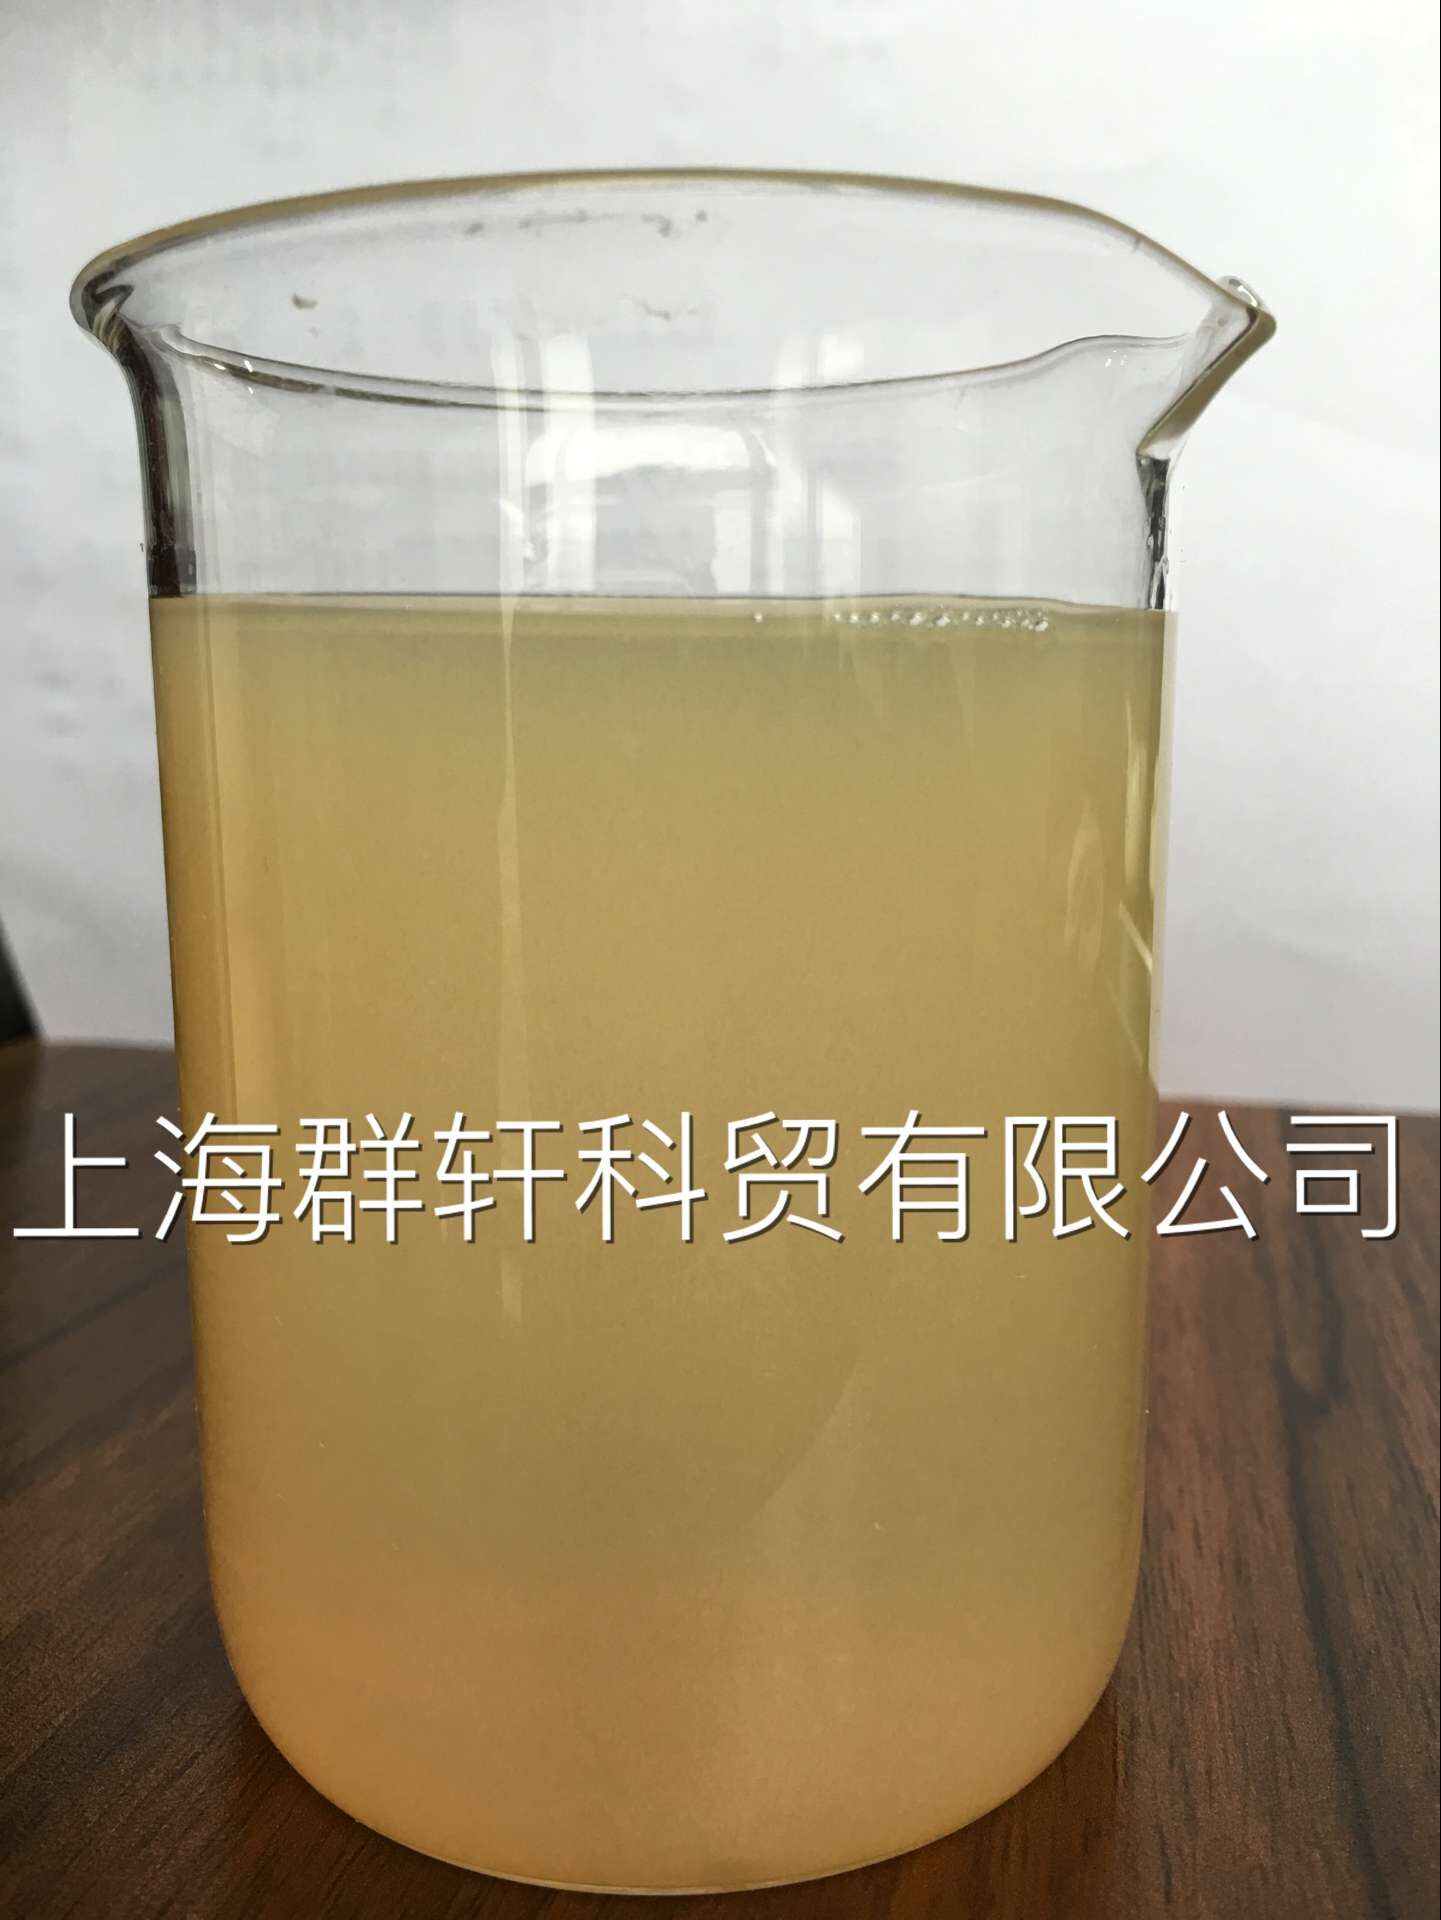 上海群轩现货供应 氧化聚乙烯蜡 筒子纱蜡